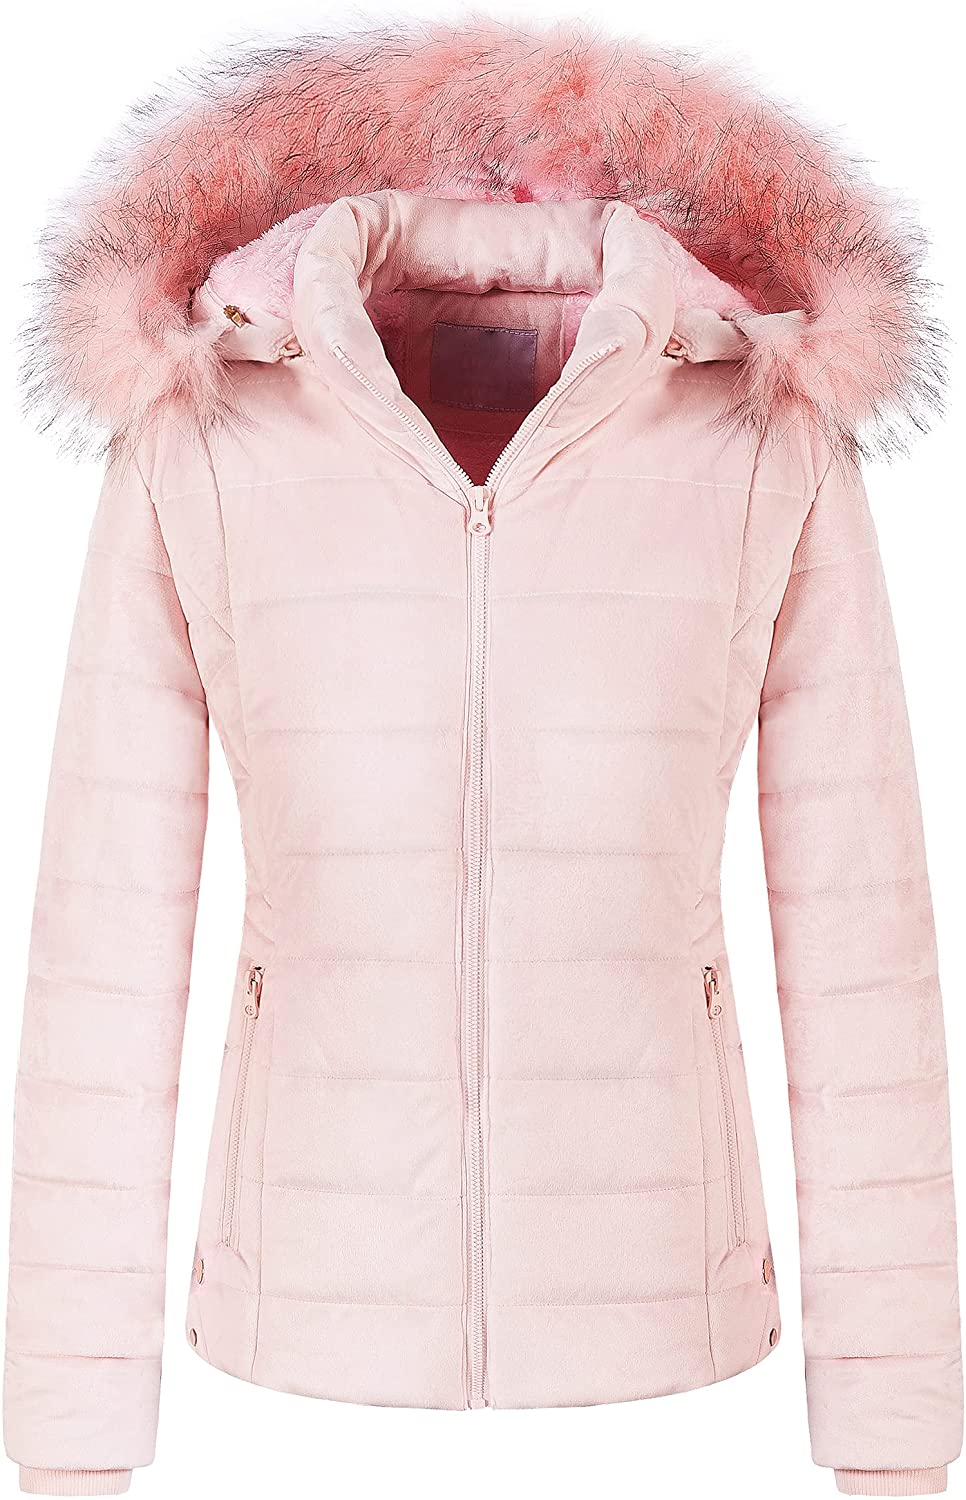 Chrisuno Women's Casual Short Winter Puffer Coat Soft Faux Fur